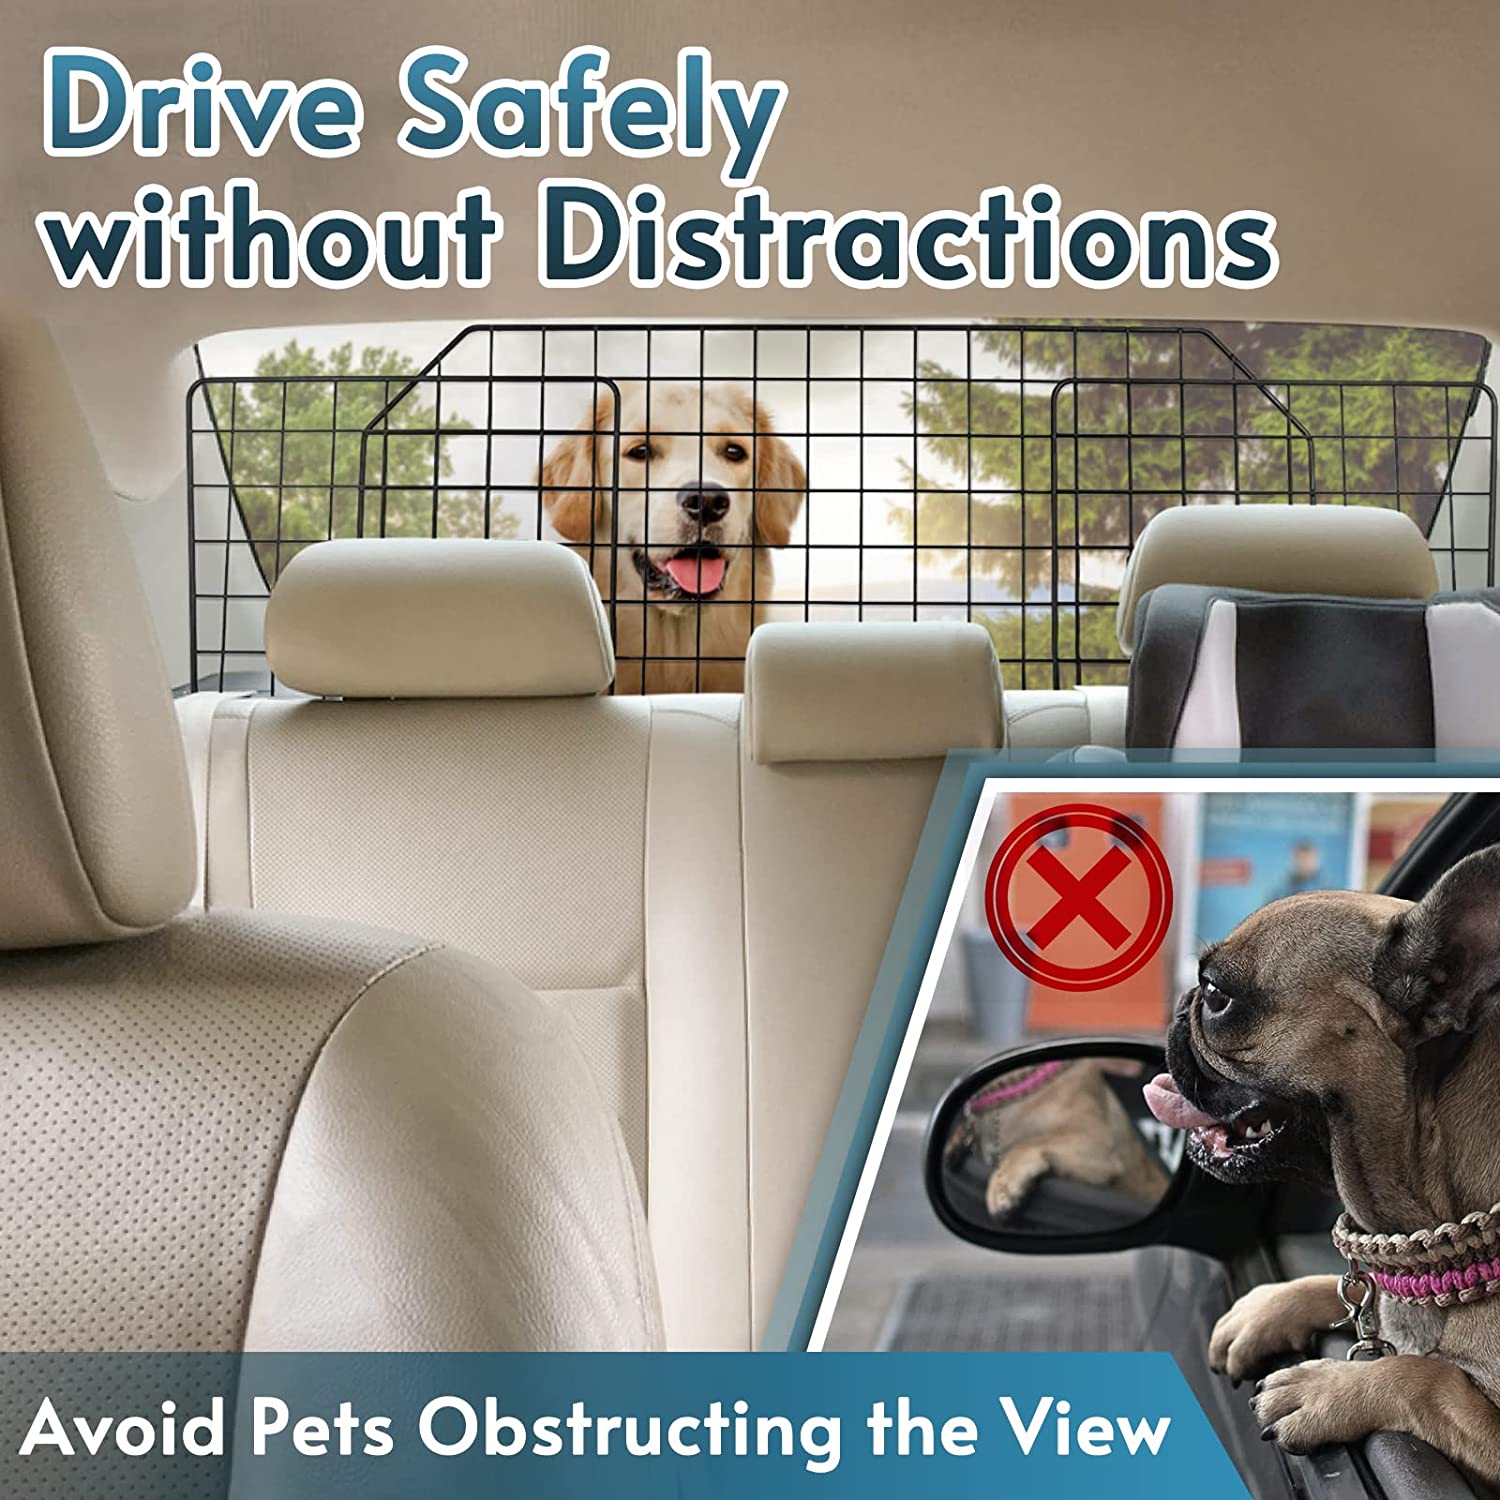 ERYTLLY Barreras de coche para perros, barrera para perros para SUV,  vehículos, divisores, barrera de perro para automóvil, alambre resistente